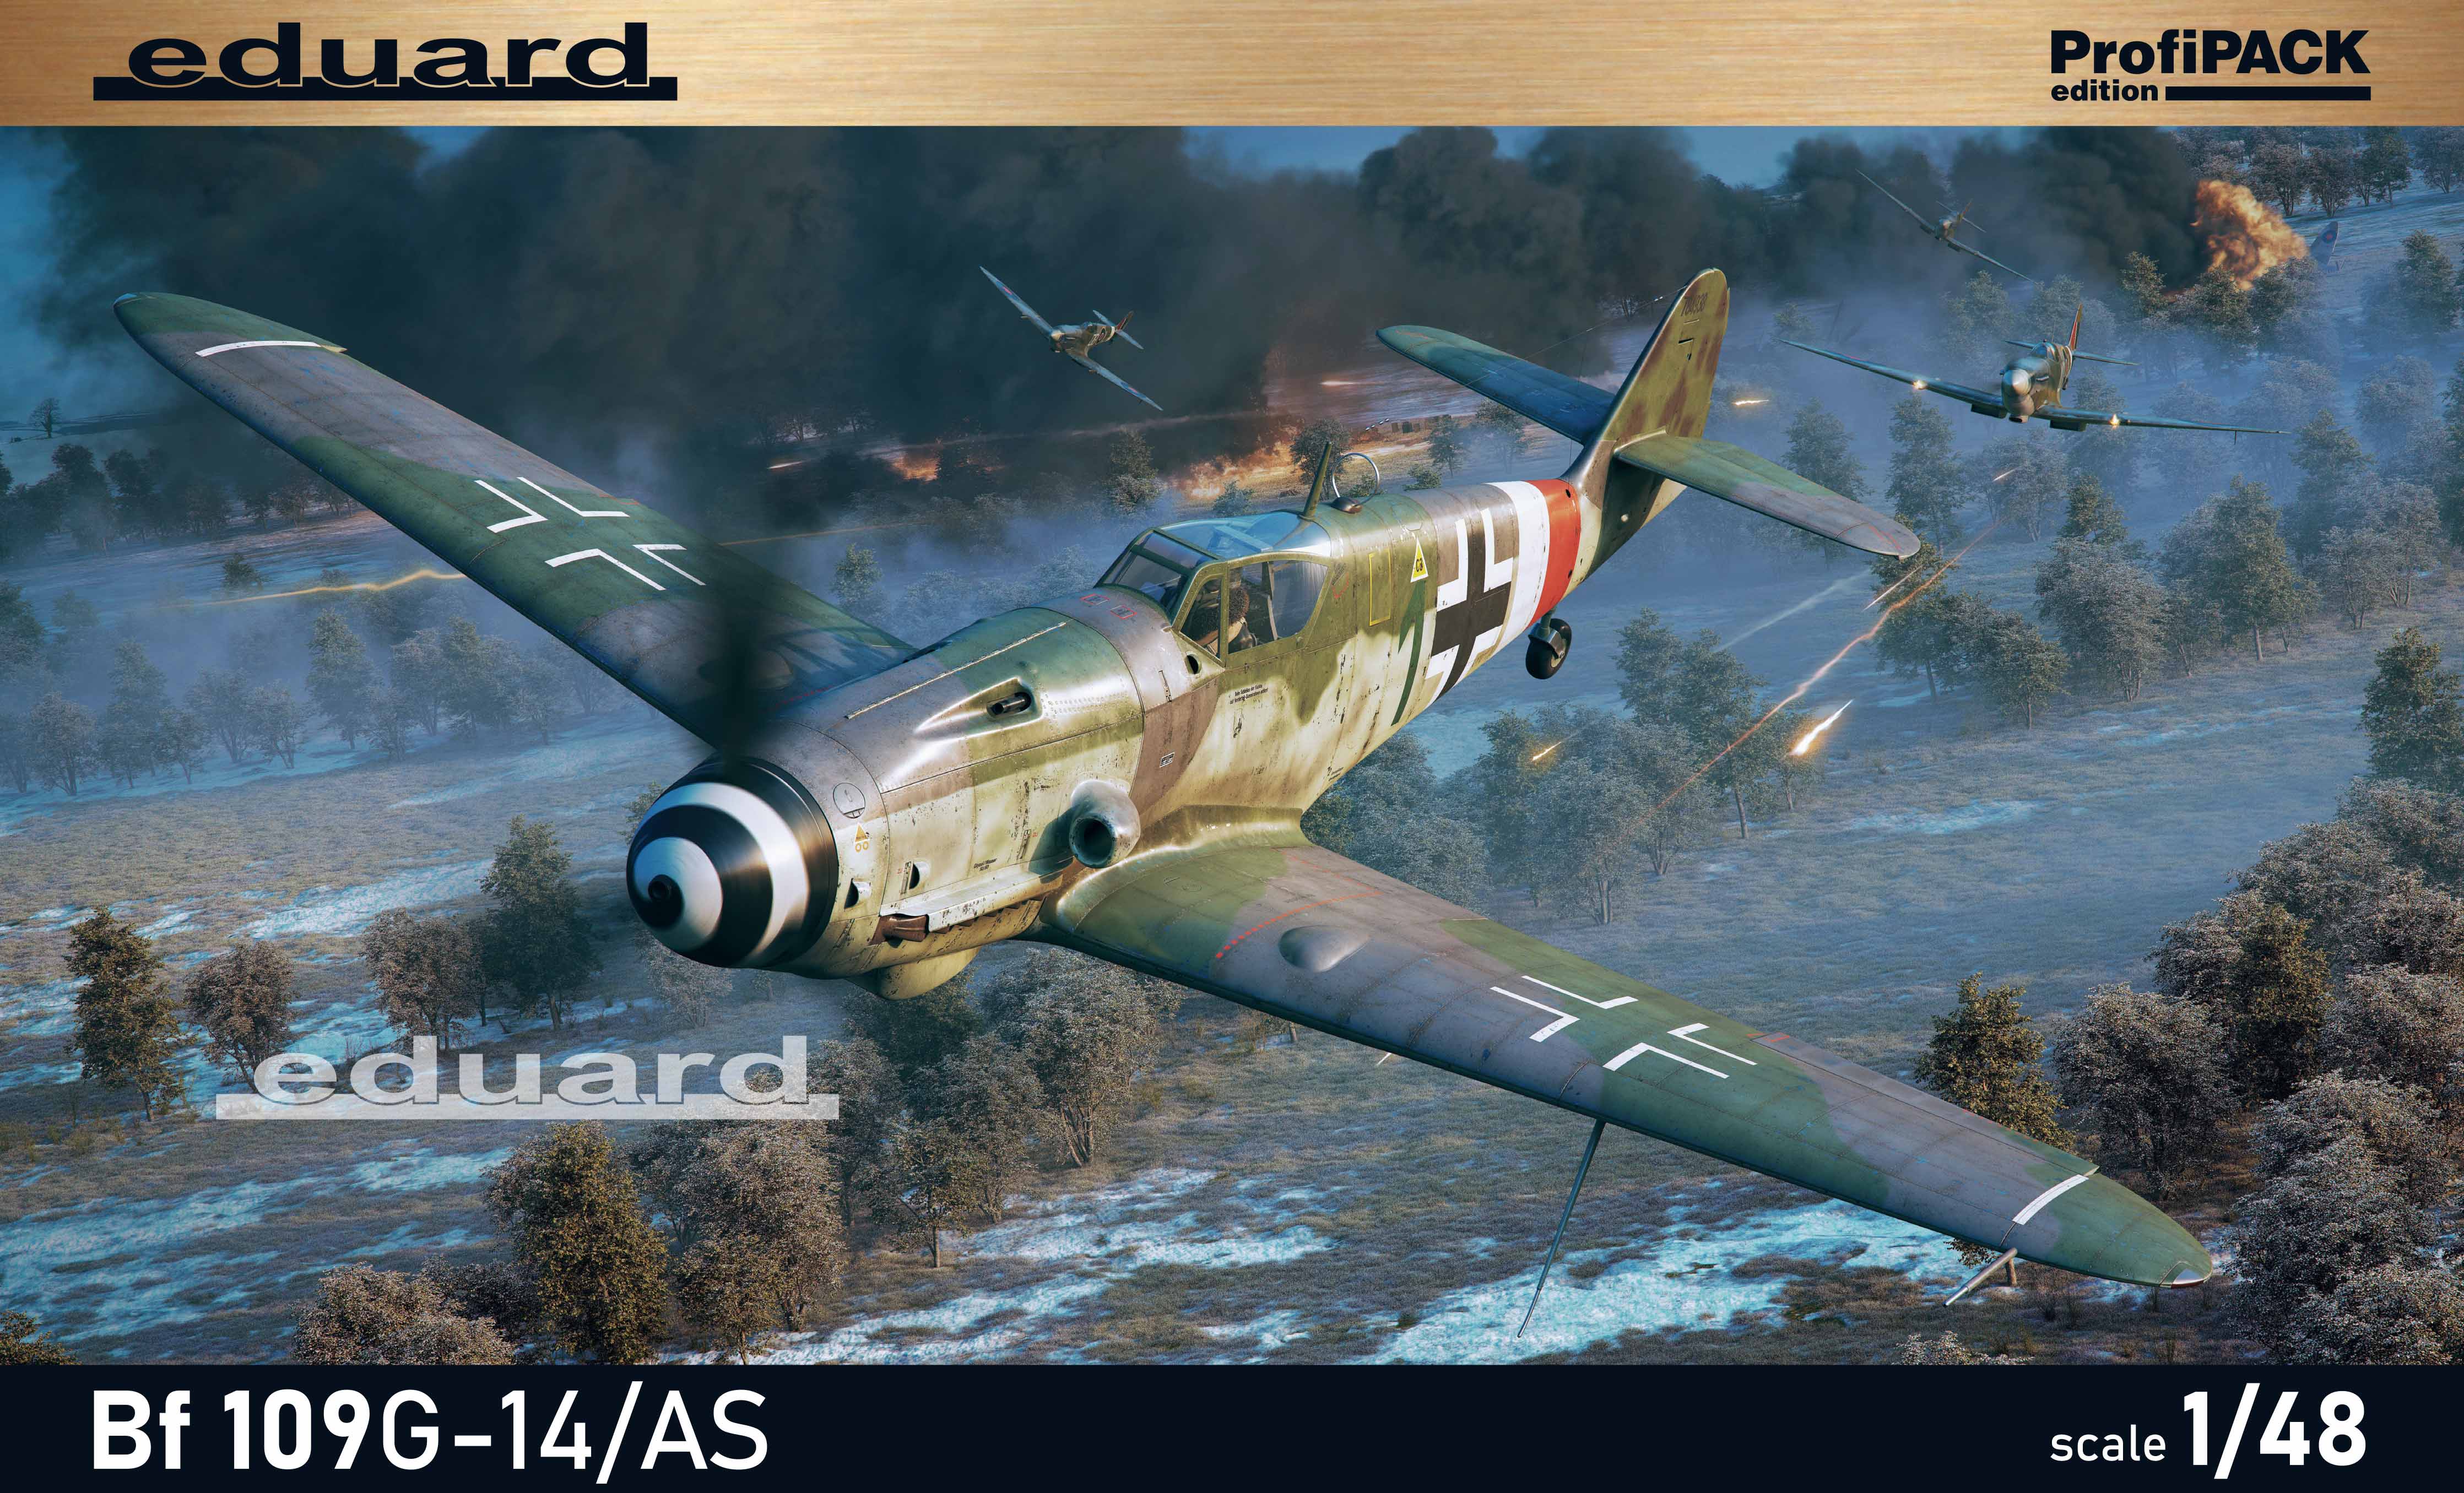 Model kit 1/48 Messerschmitt Bf-109G-14/AS ProfiPACK edition (Eduard kits)